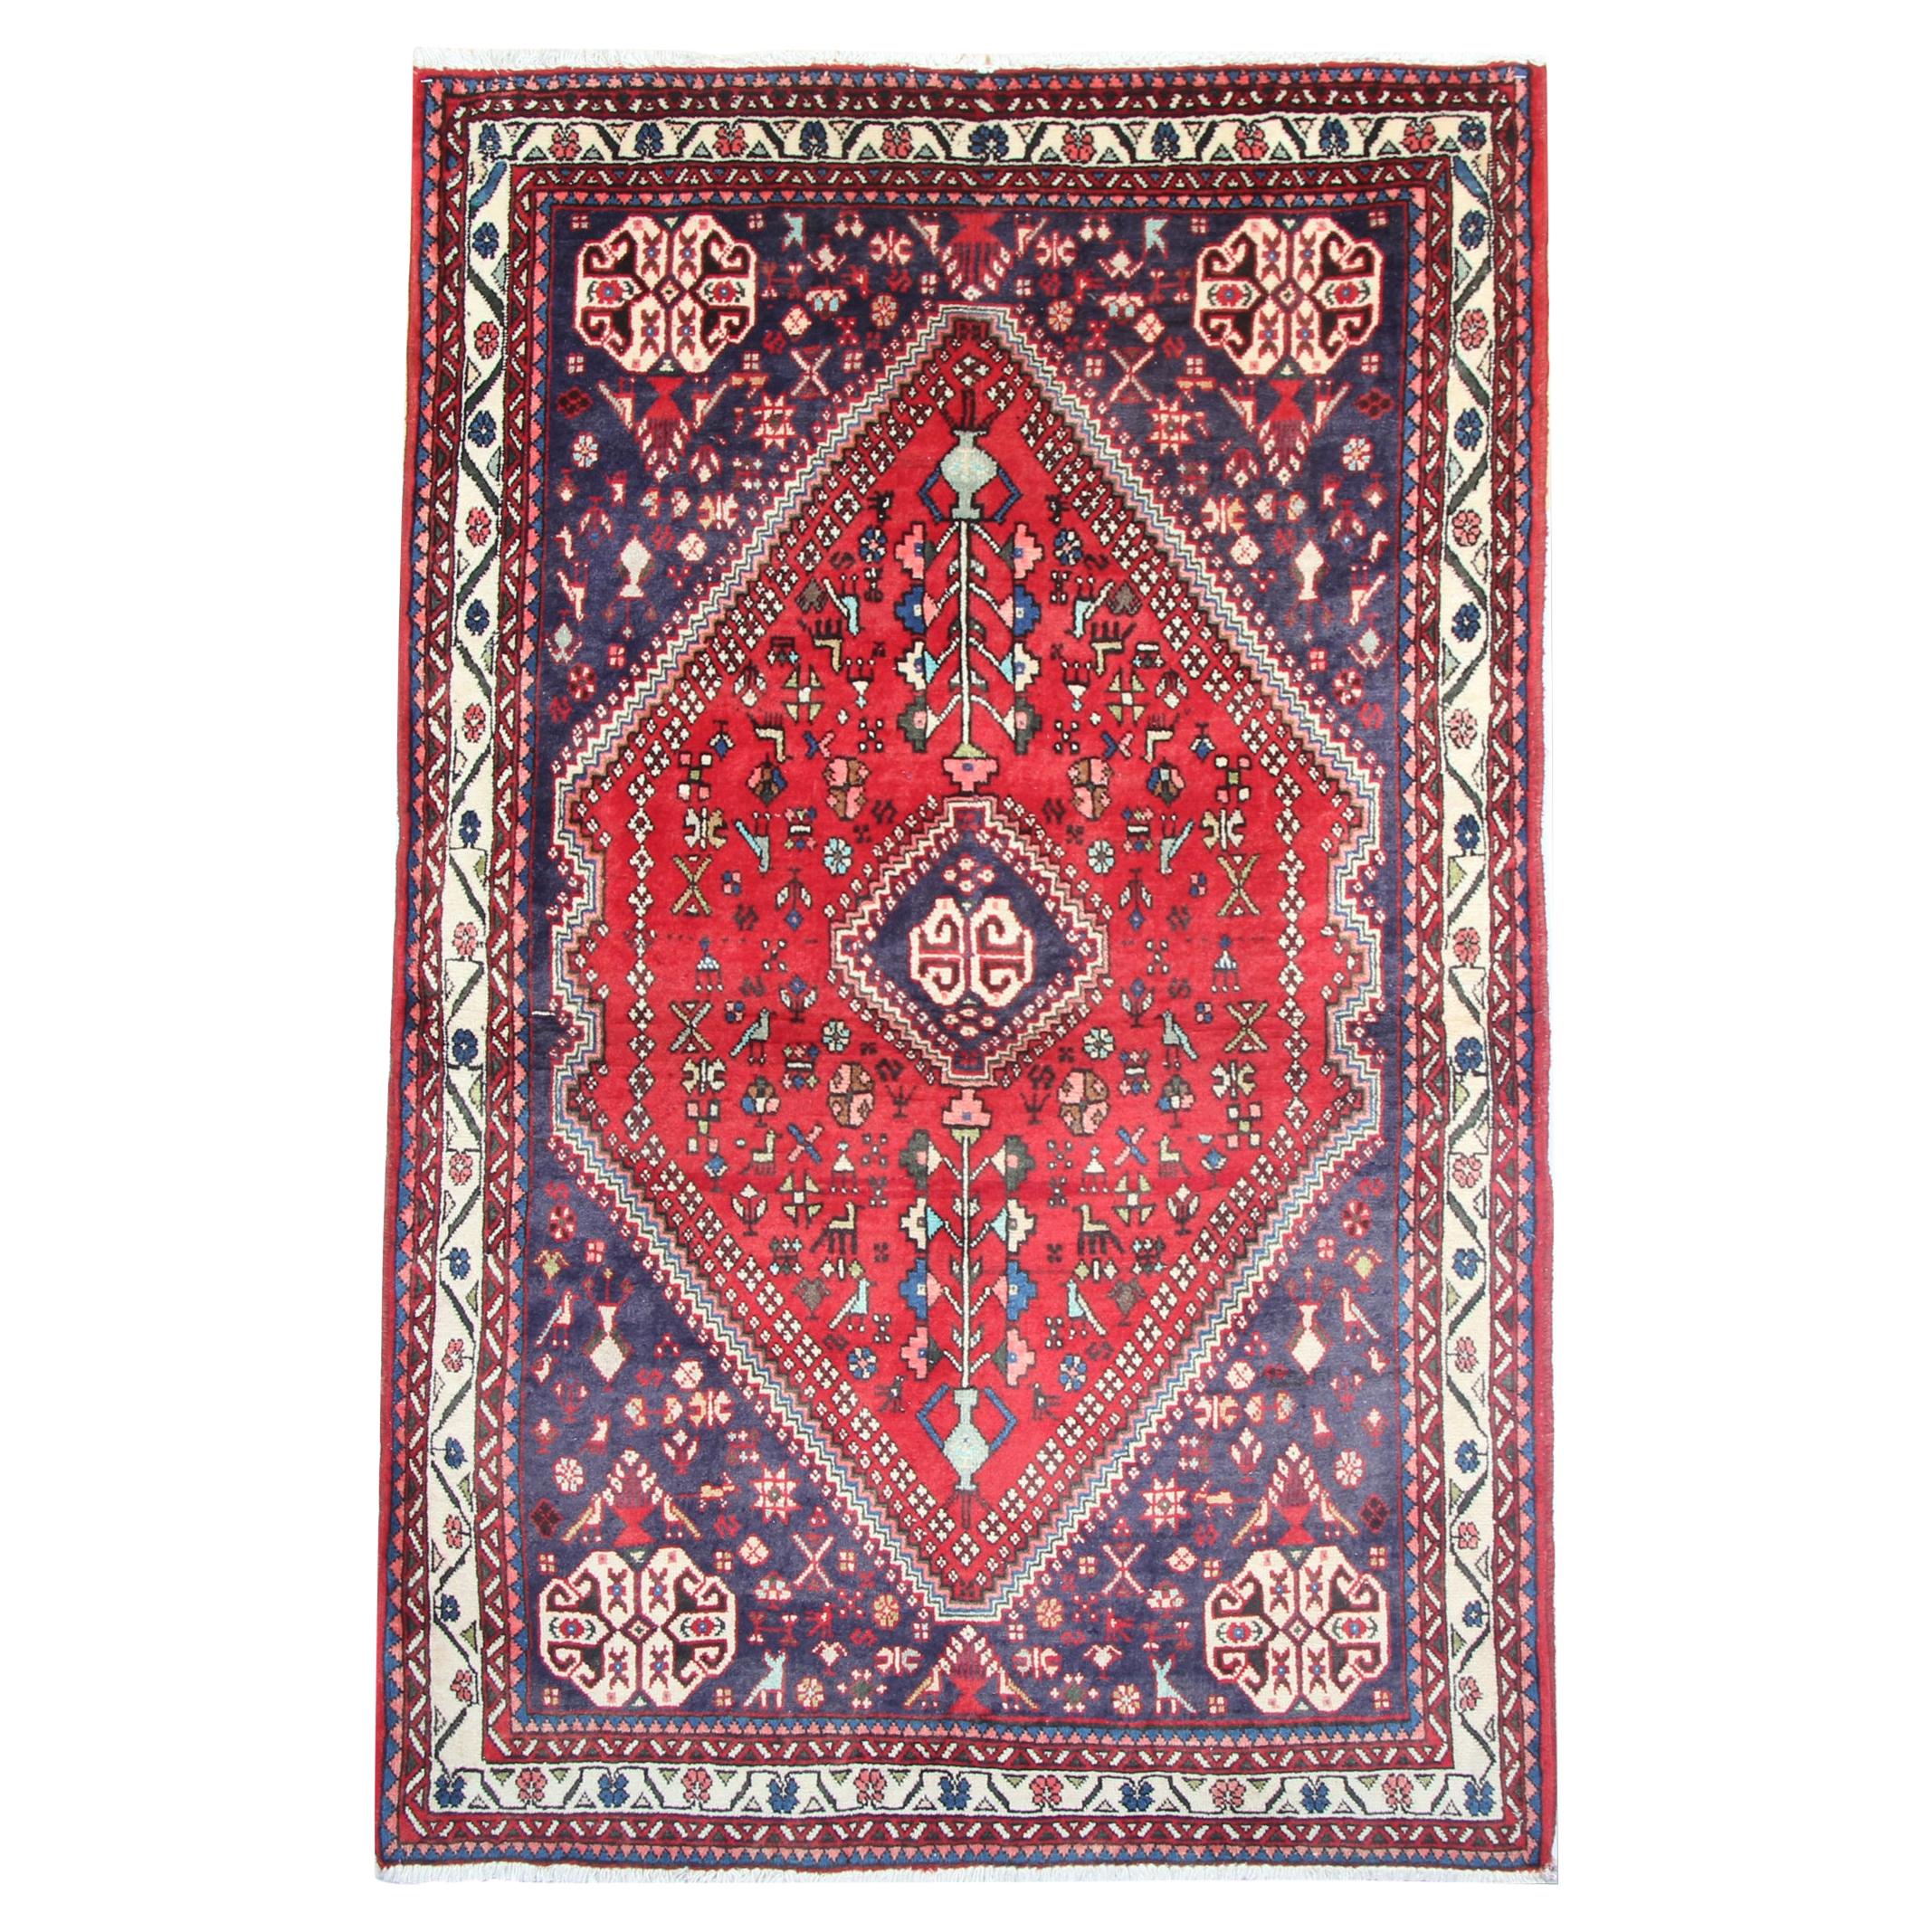 Tapis oriental géométrique en laine rouge, tapis traditionnel tissé à la main